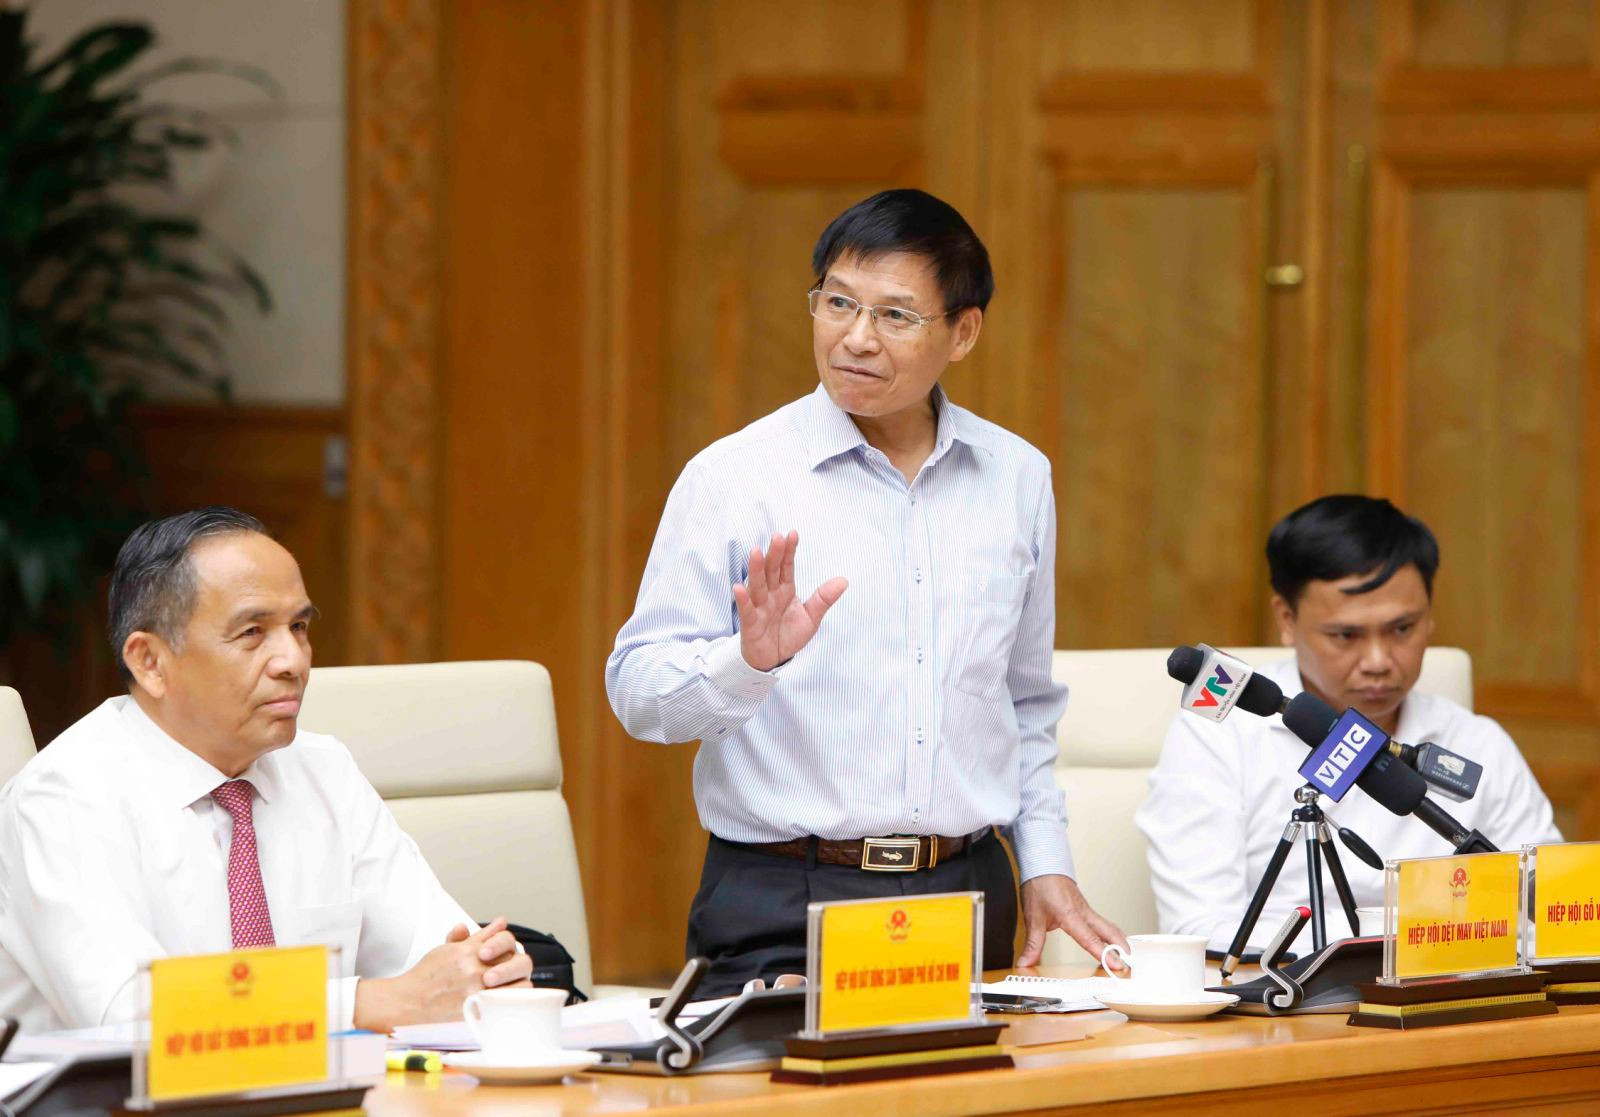 Phó Thủ tướng Lê Minh Khái chủ trì họp bàn giải pháp nâng cao khả năng tiếp cận tín dụng của người dân, doanh nghiệp - Ảnh 6.